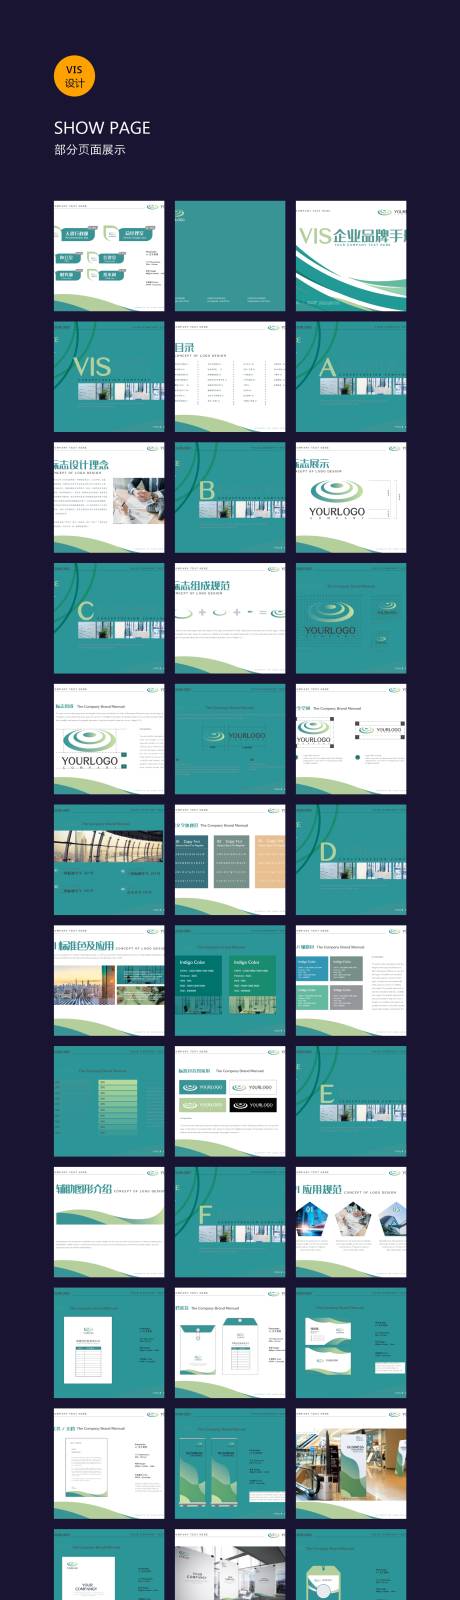 绿色创意医疗公司企业VI设计VI画册